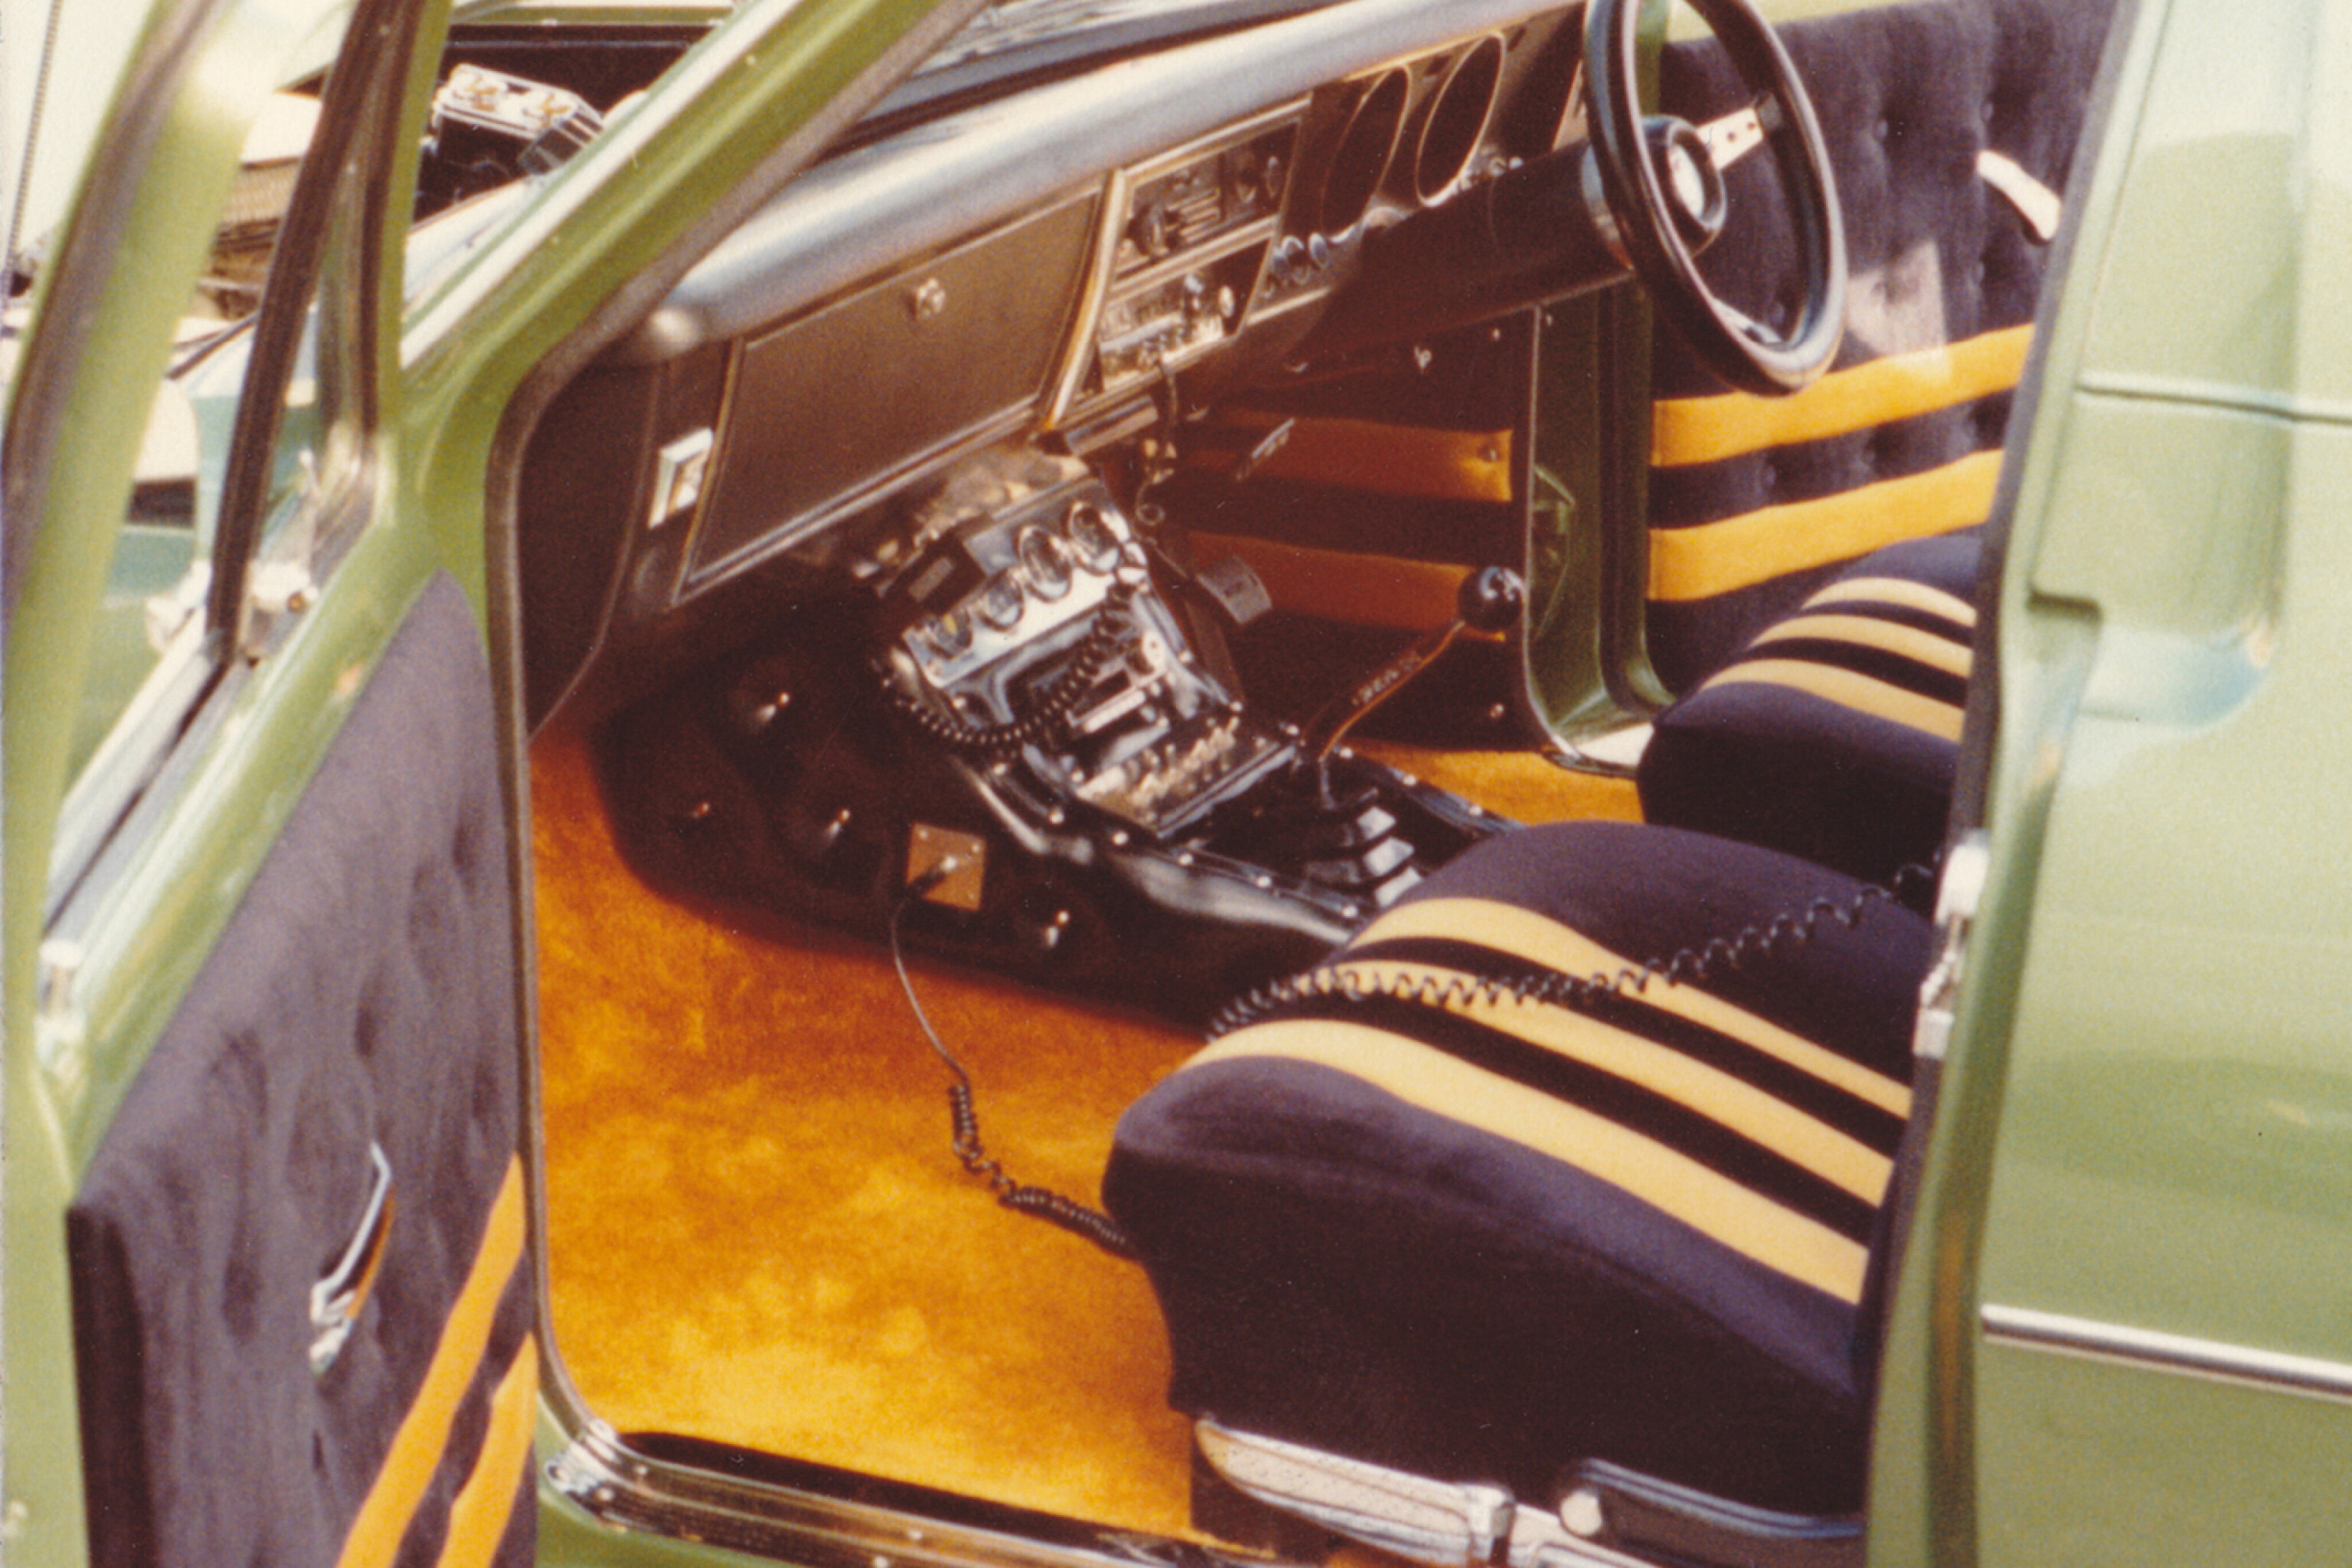 b51c1548/green knight hg panelvan interior jpg